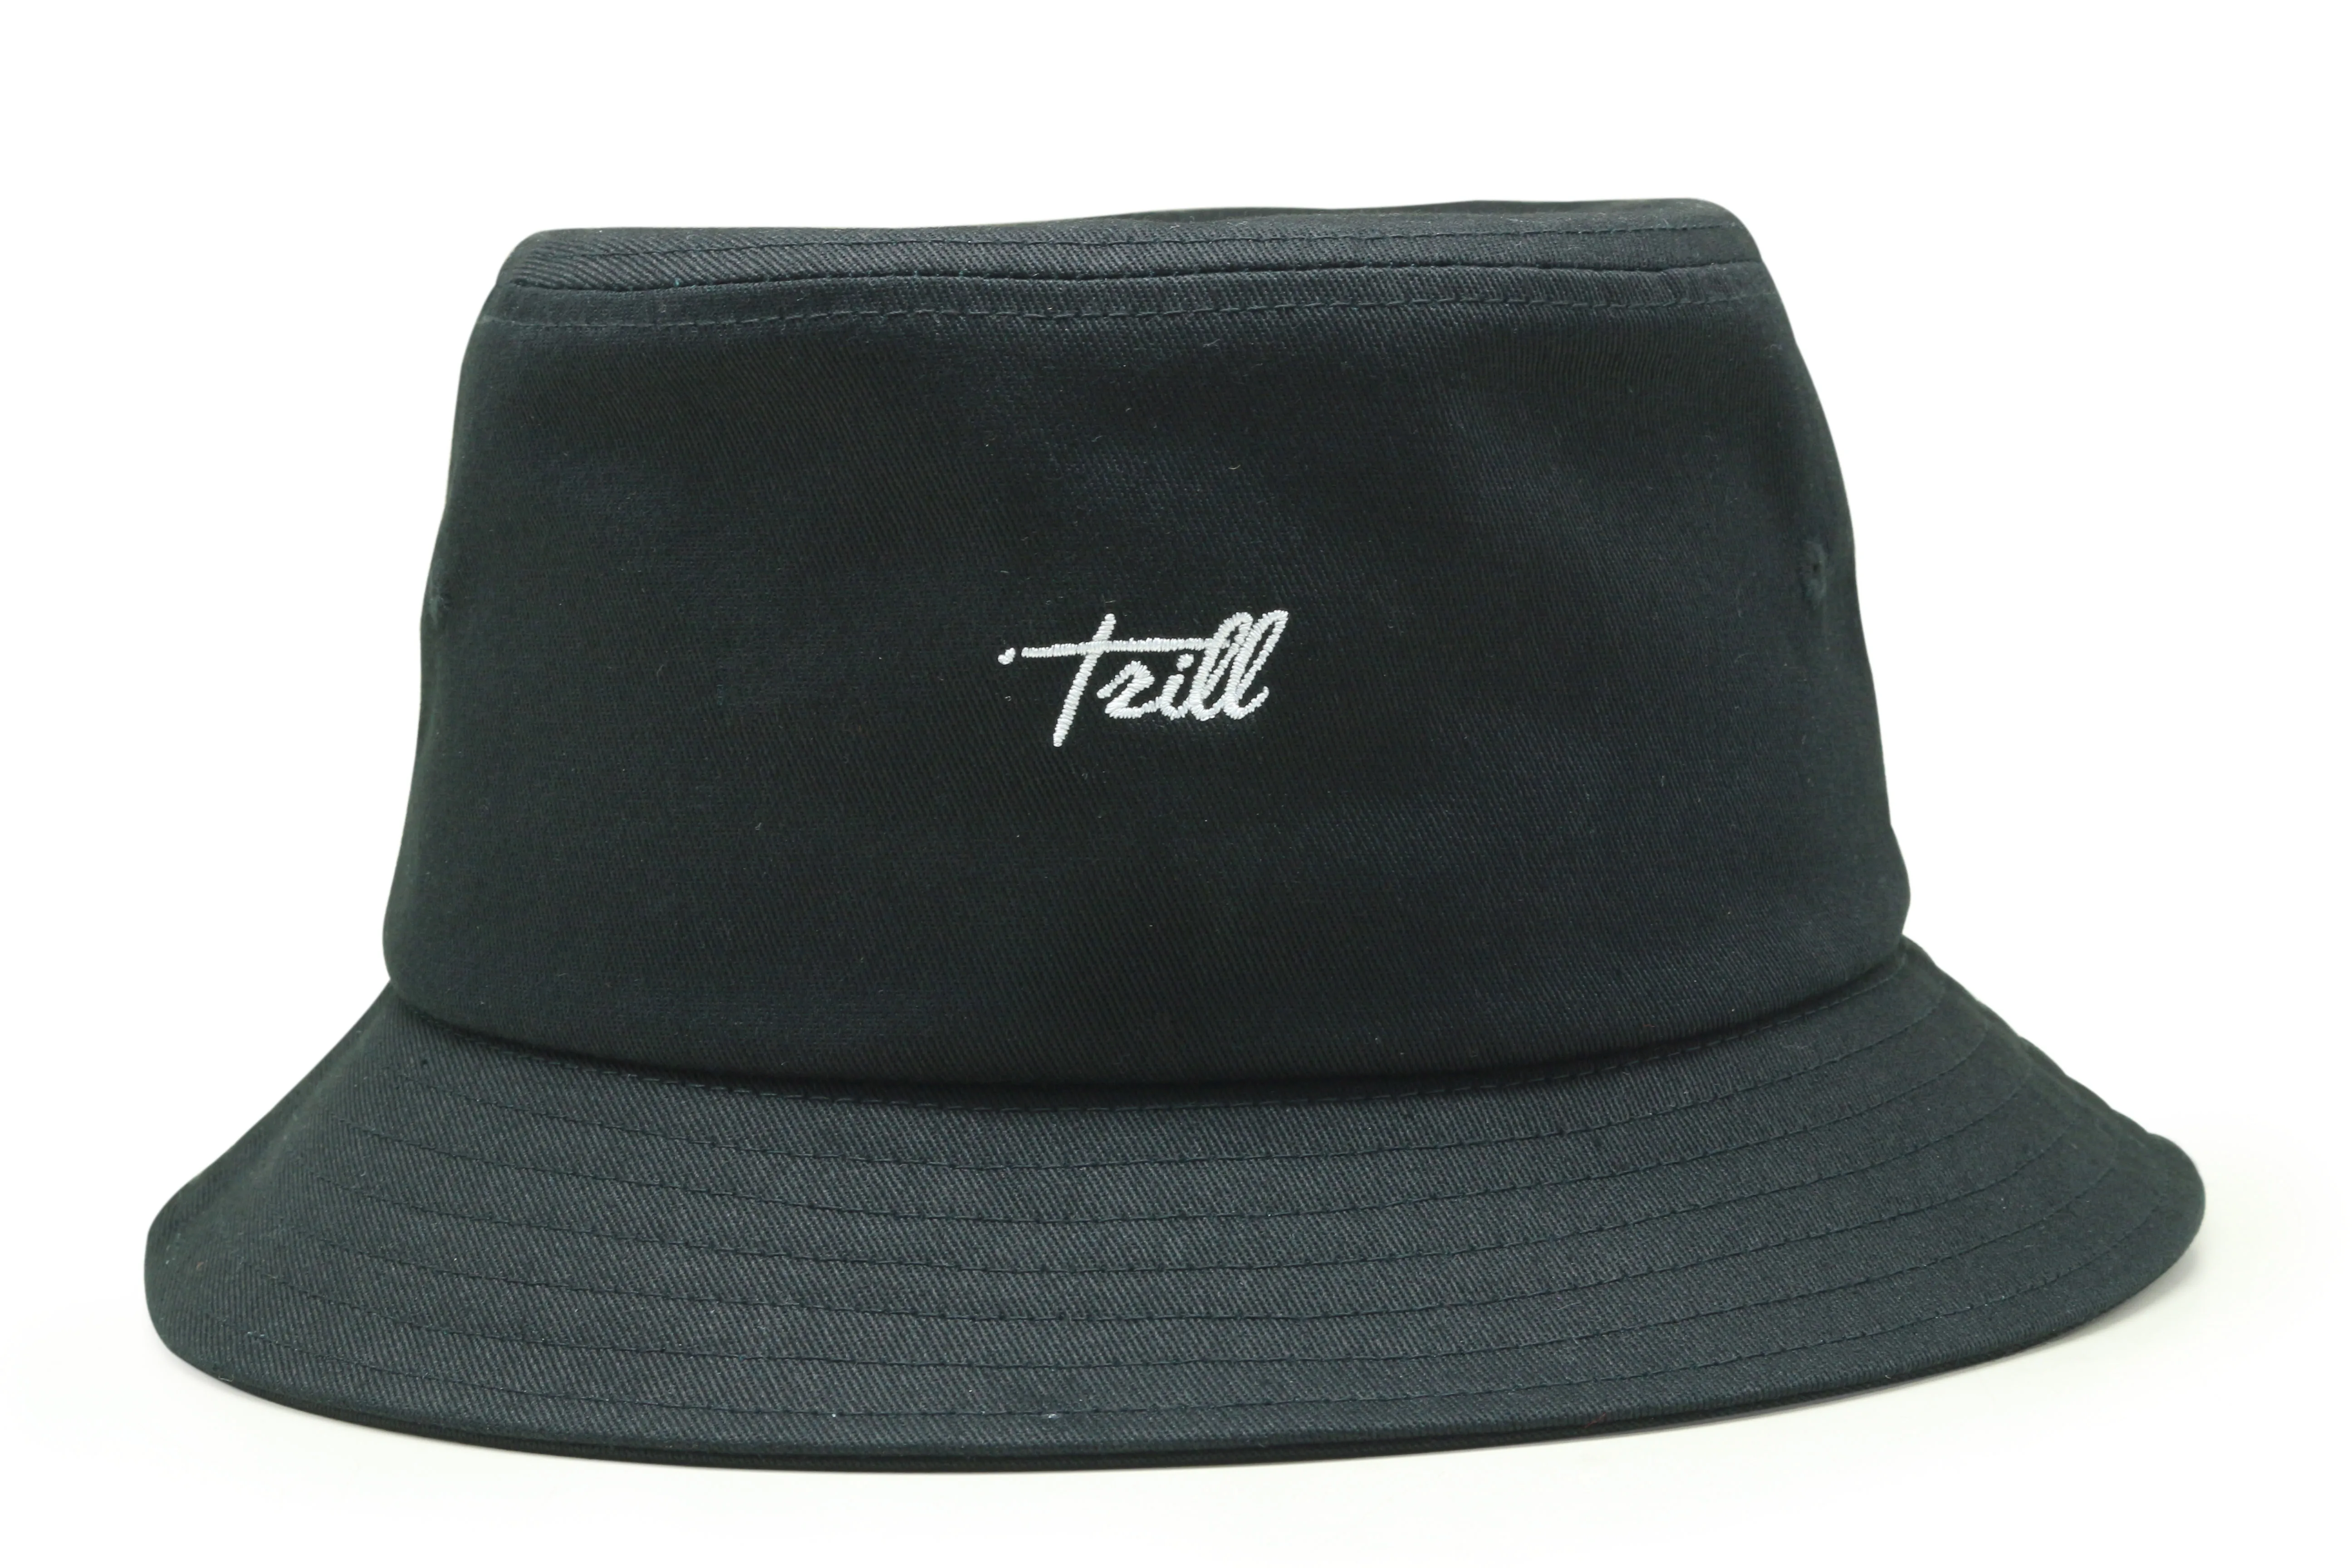 Black Bucket Hat 100% Cotton Customize Plain Cap Wholesale - Buy Black